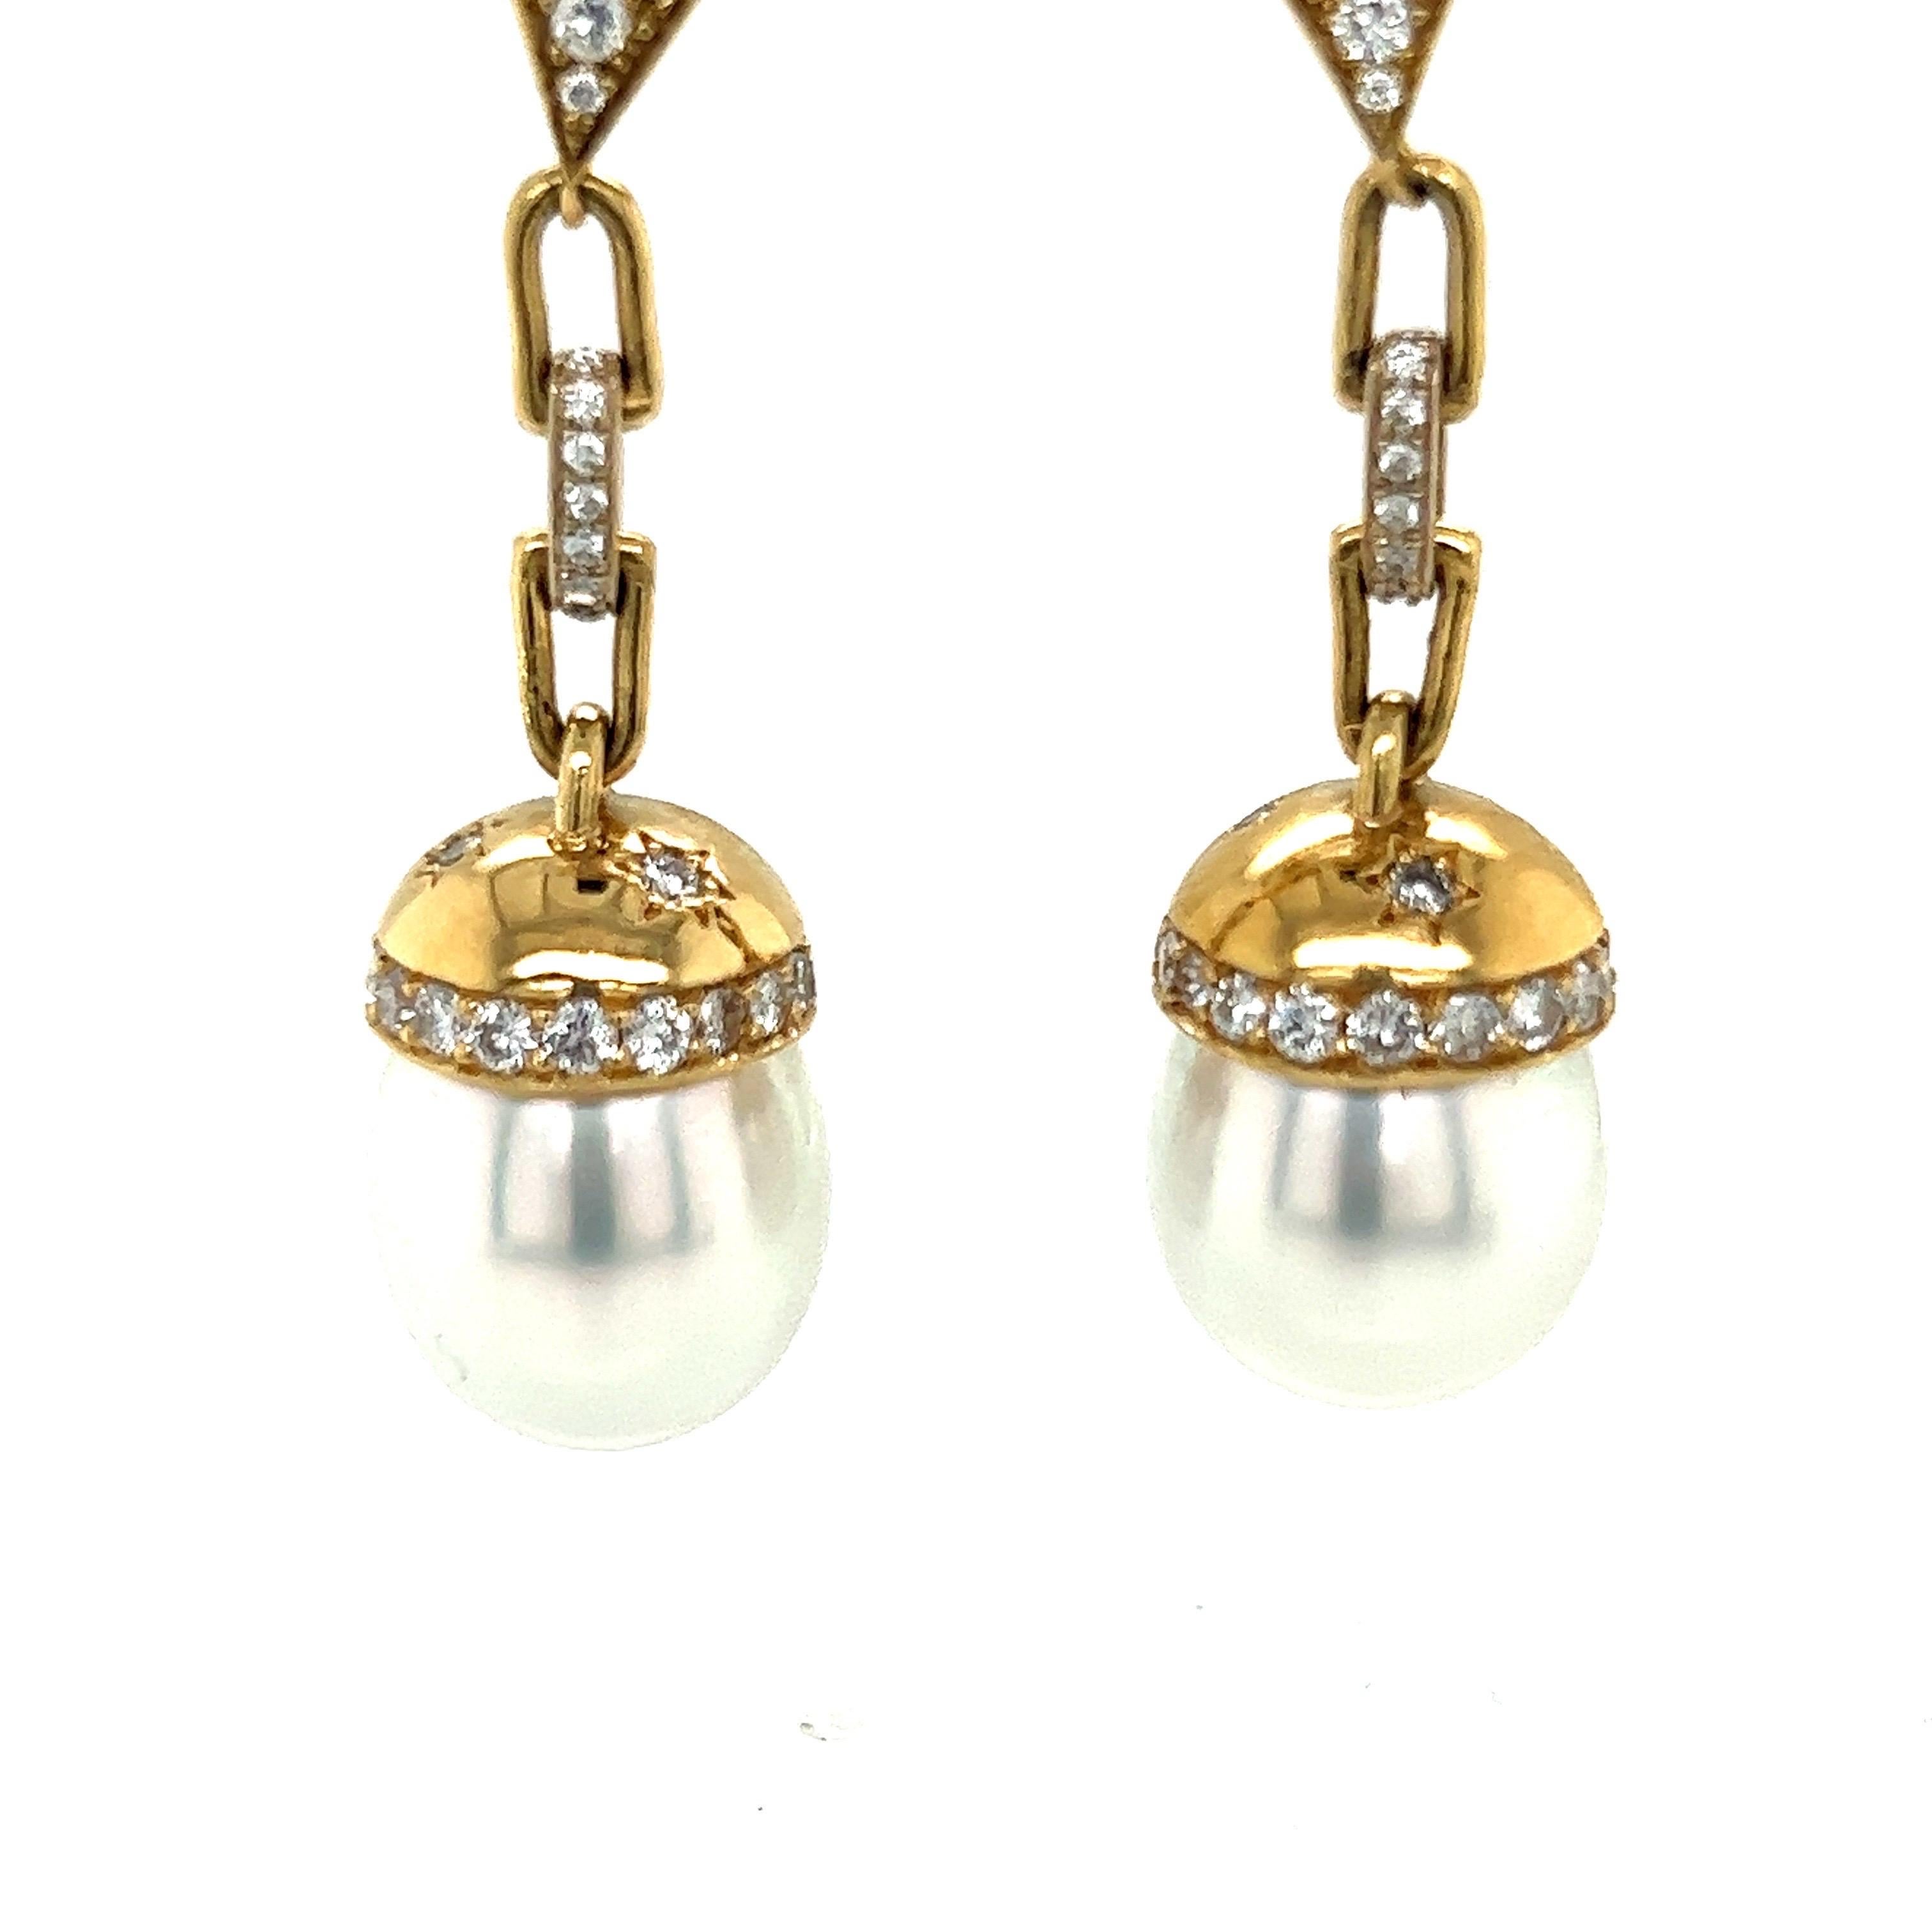 Boucles d'oreilles en perles blanches des mers du Sud en 18k
or jaune avec diamants blancs

Poids total des diamants : environ 1.88 ct 
Couleur G-H, clarté VS-2/SI-1

51-52mm de long
